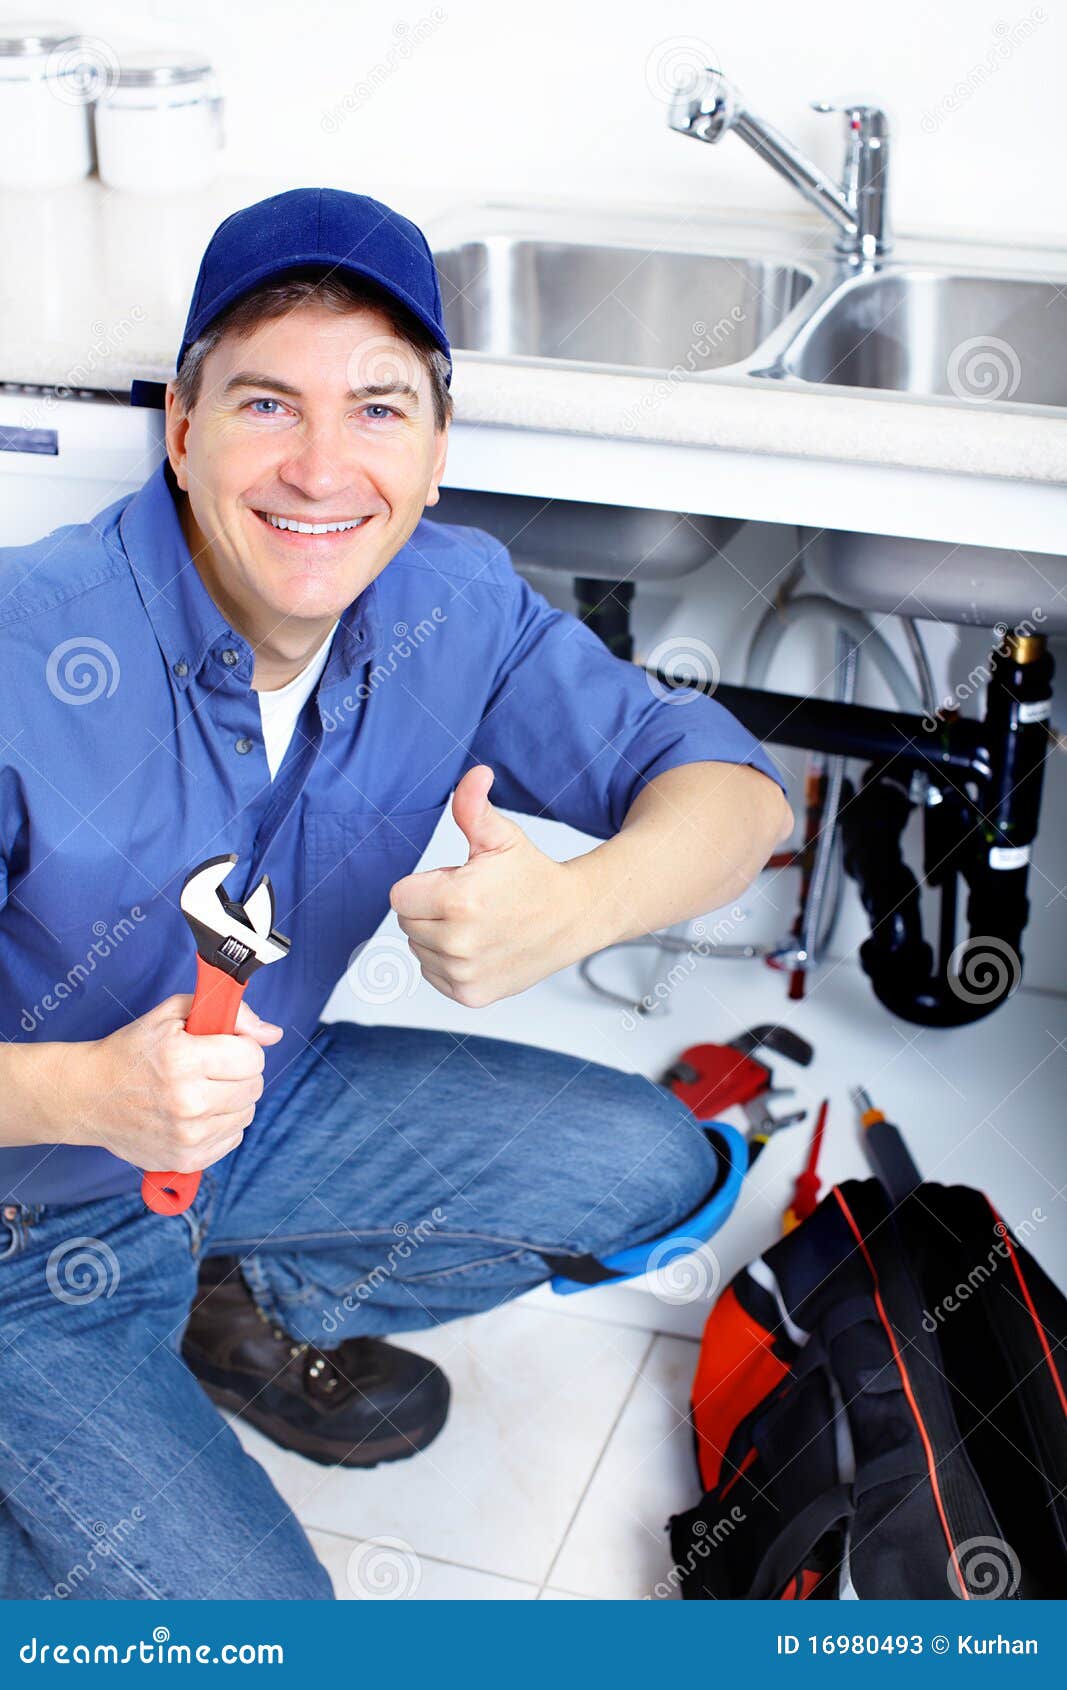 plumber-16980493.jpg